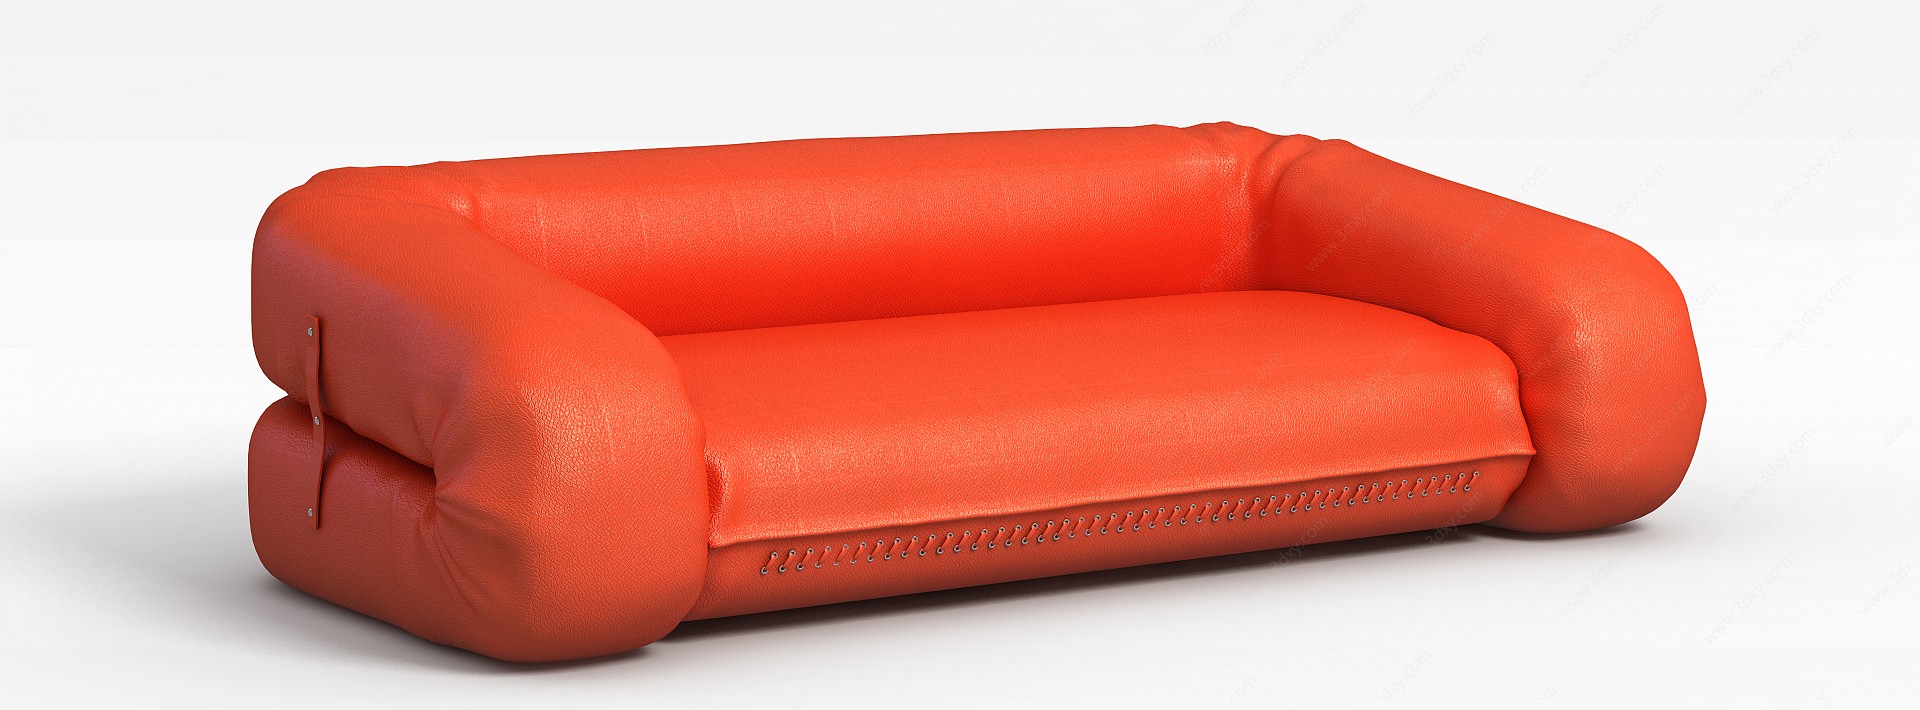 橘色皮质沙发3D模型